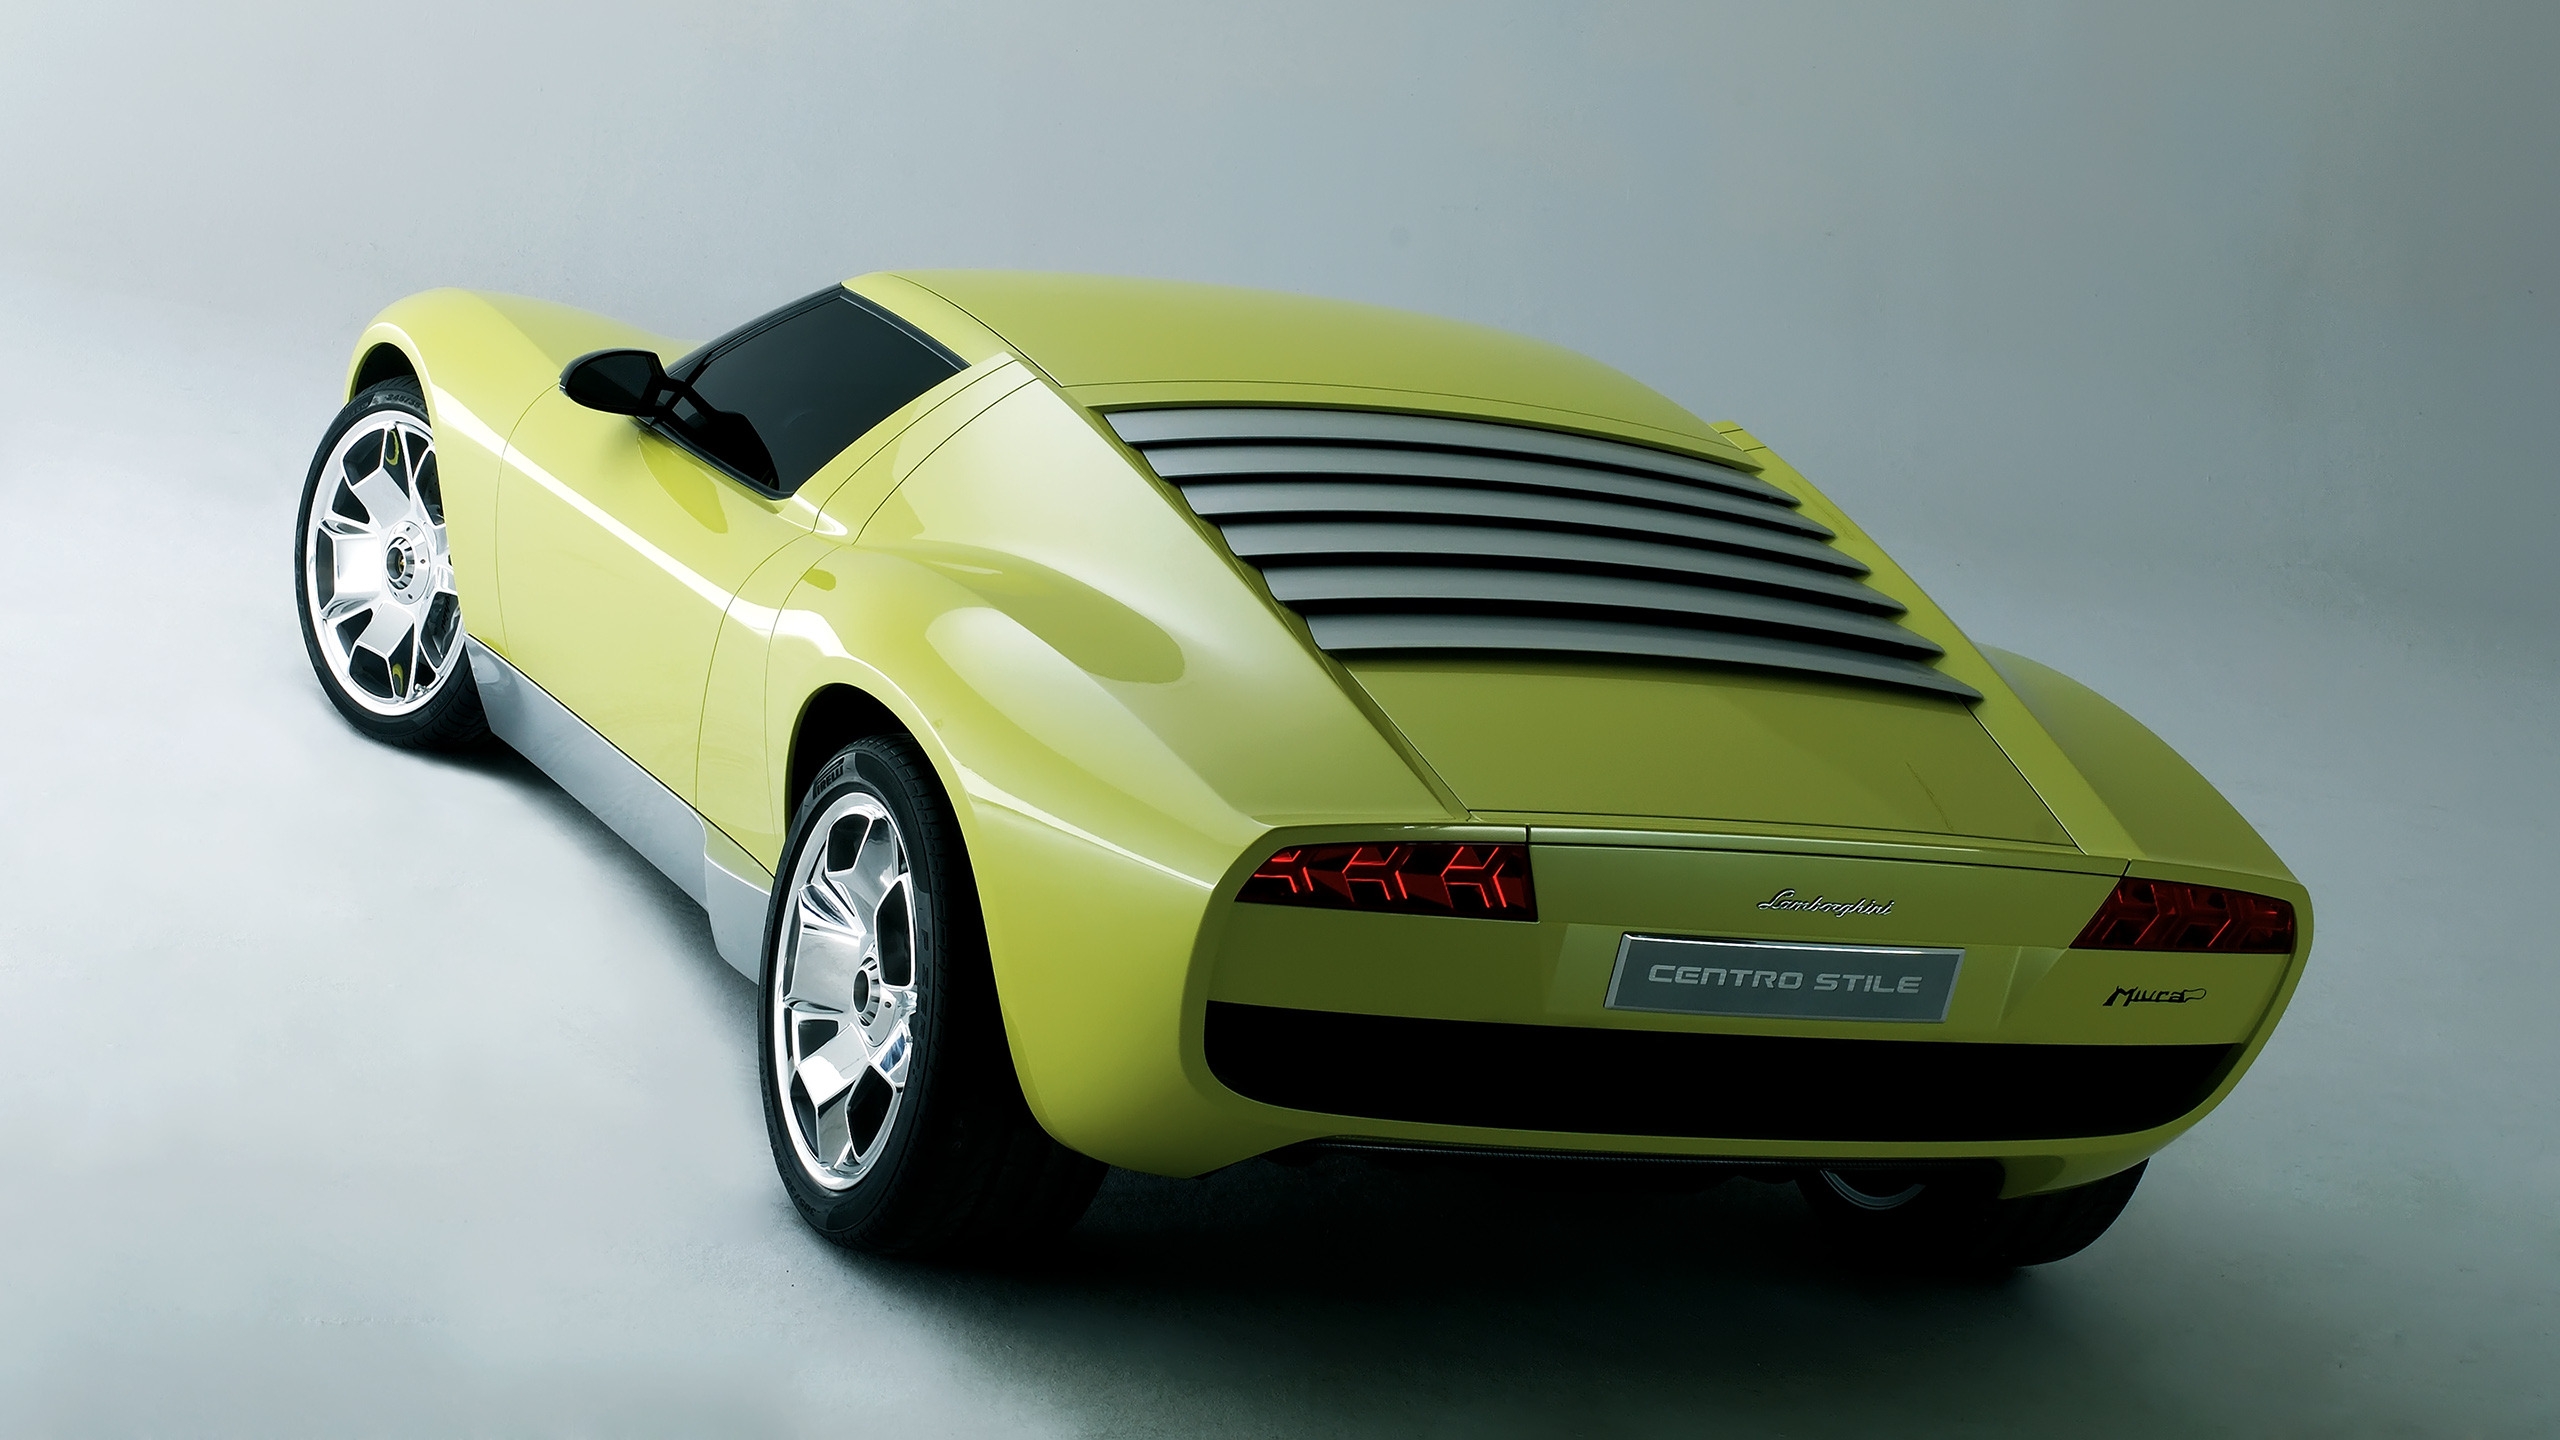 Lamborghini Miura Concept Rear for 2560x1440 HDTV resolution